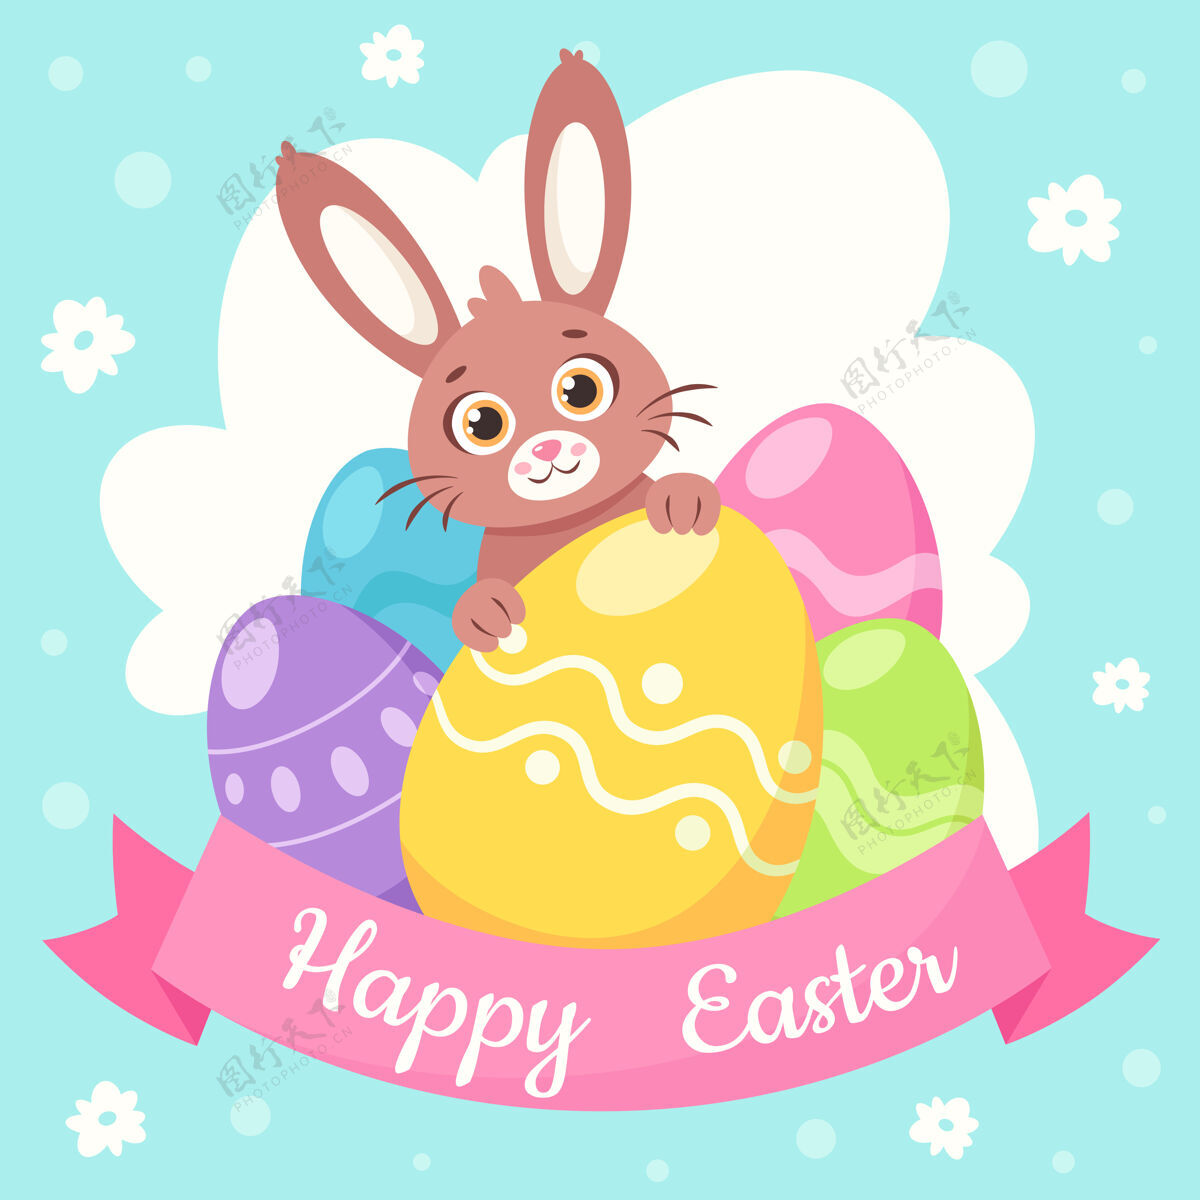 彩蛋复活节快乐贺卡复活节彩蛋兔子礼物庆祝复活节快乐